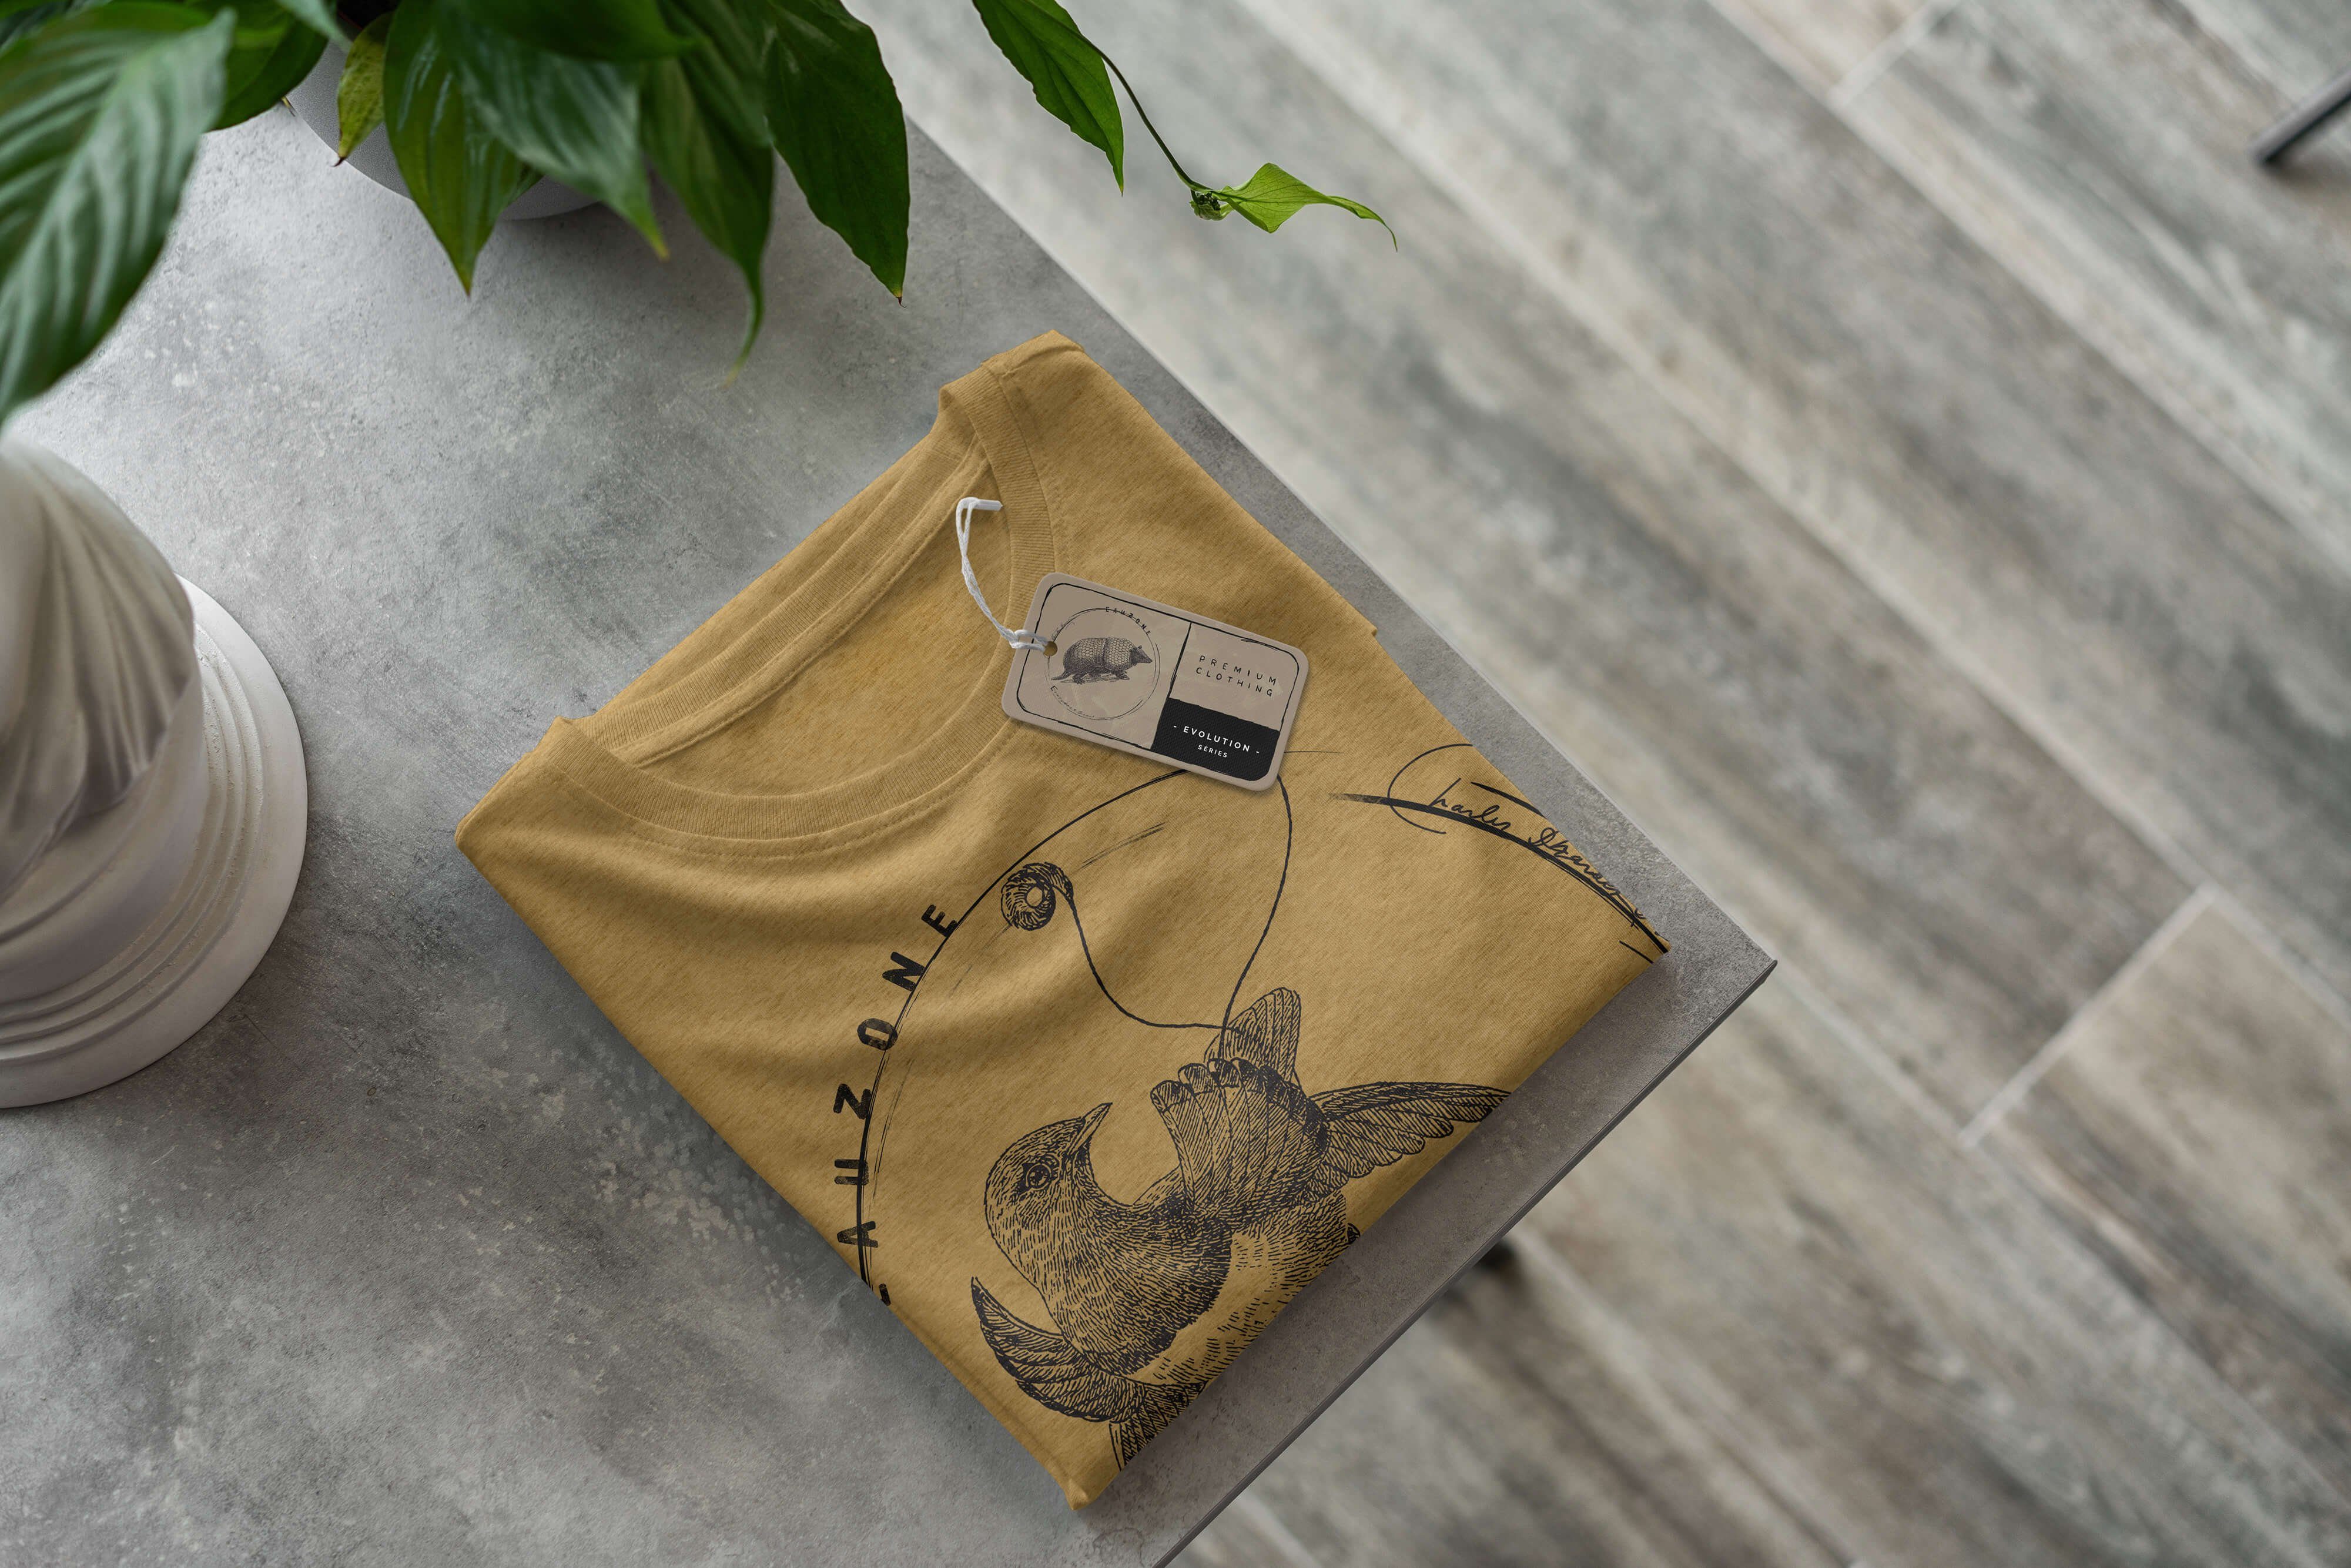 Sinus T-Shirt Antique Herren Evolution Paradiesvogel T-Shirt Gold Art